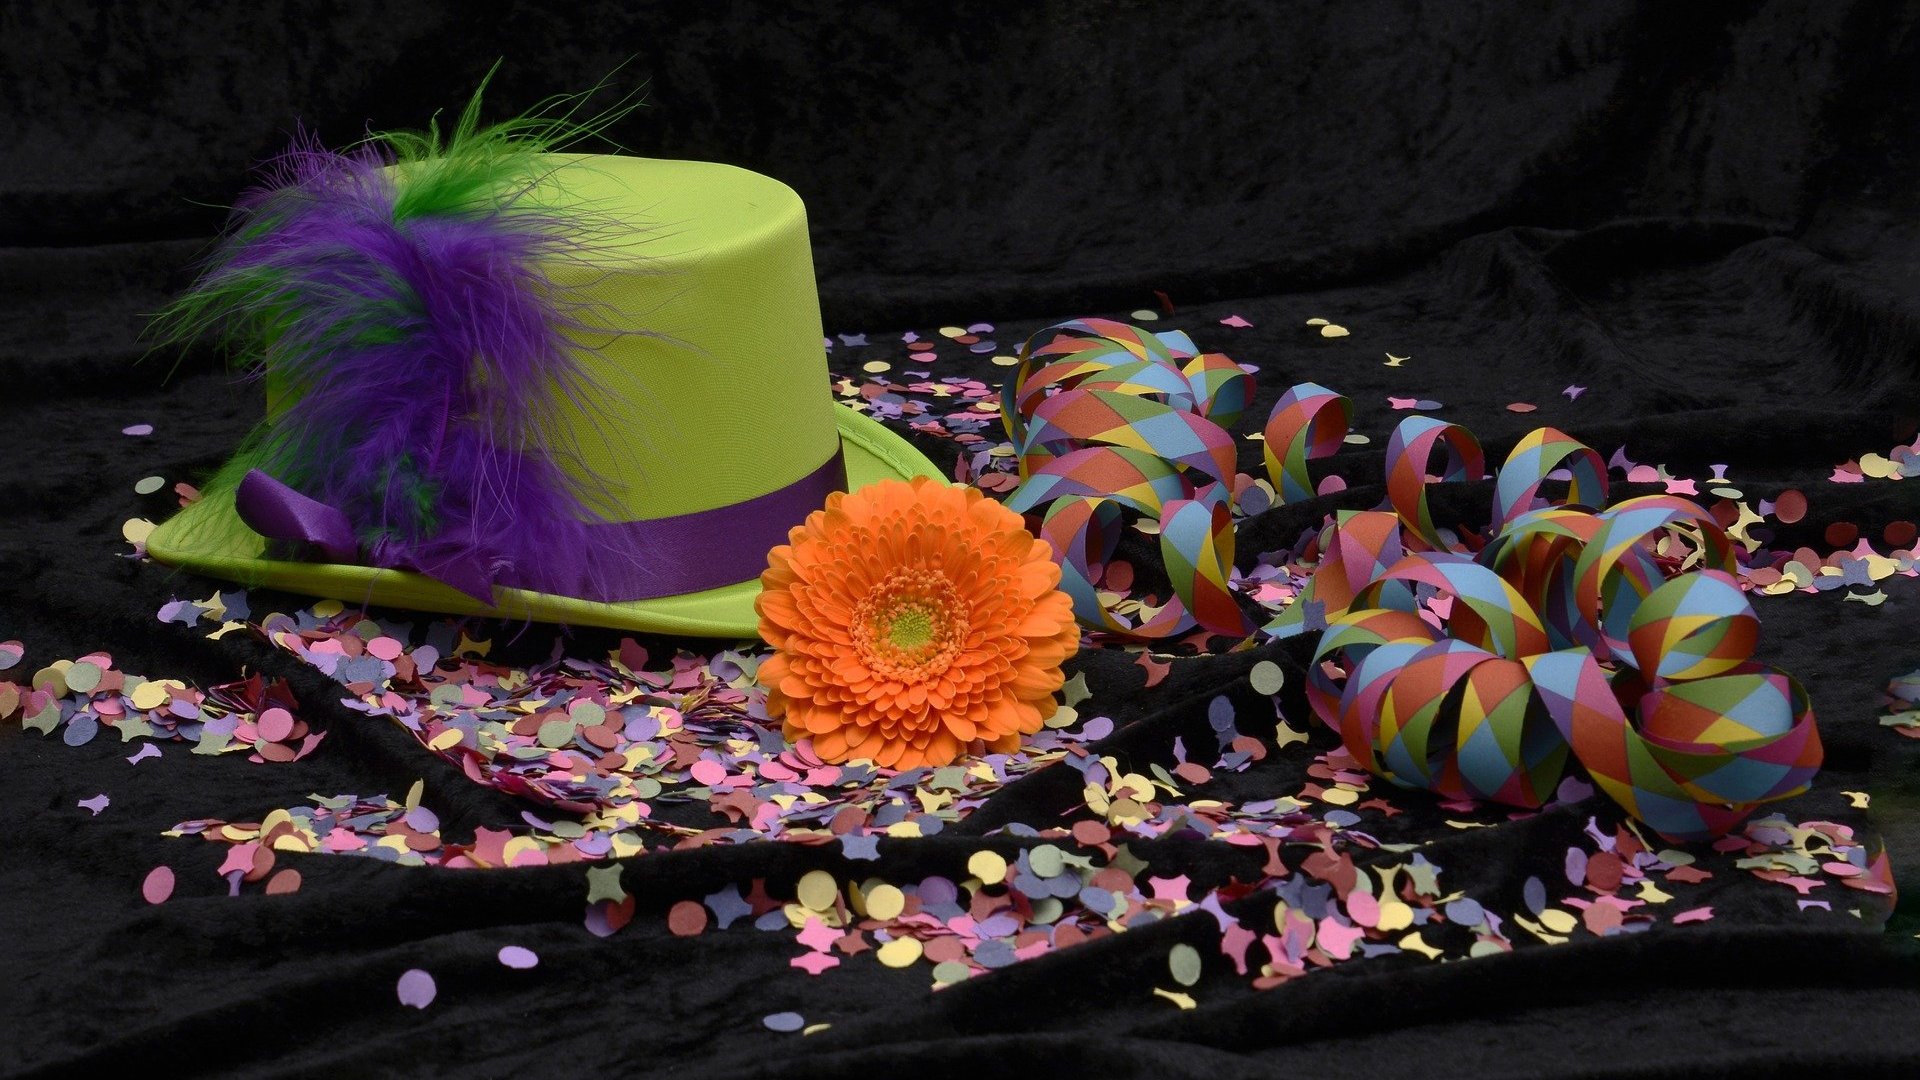 Chapéu, confetes e flor um ao lado do outro representando o carnaval